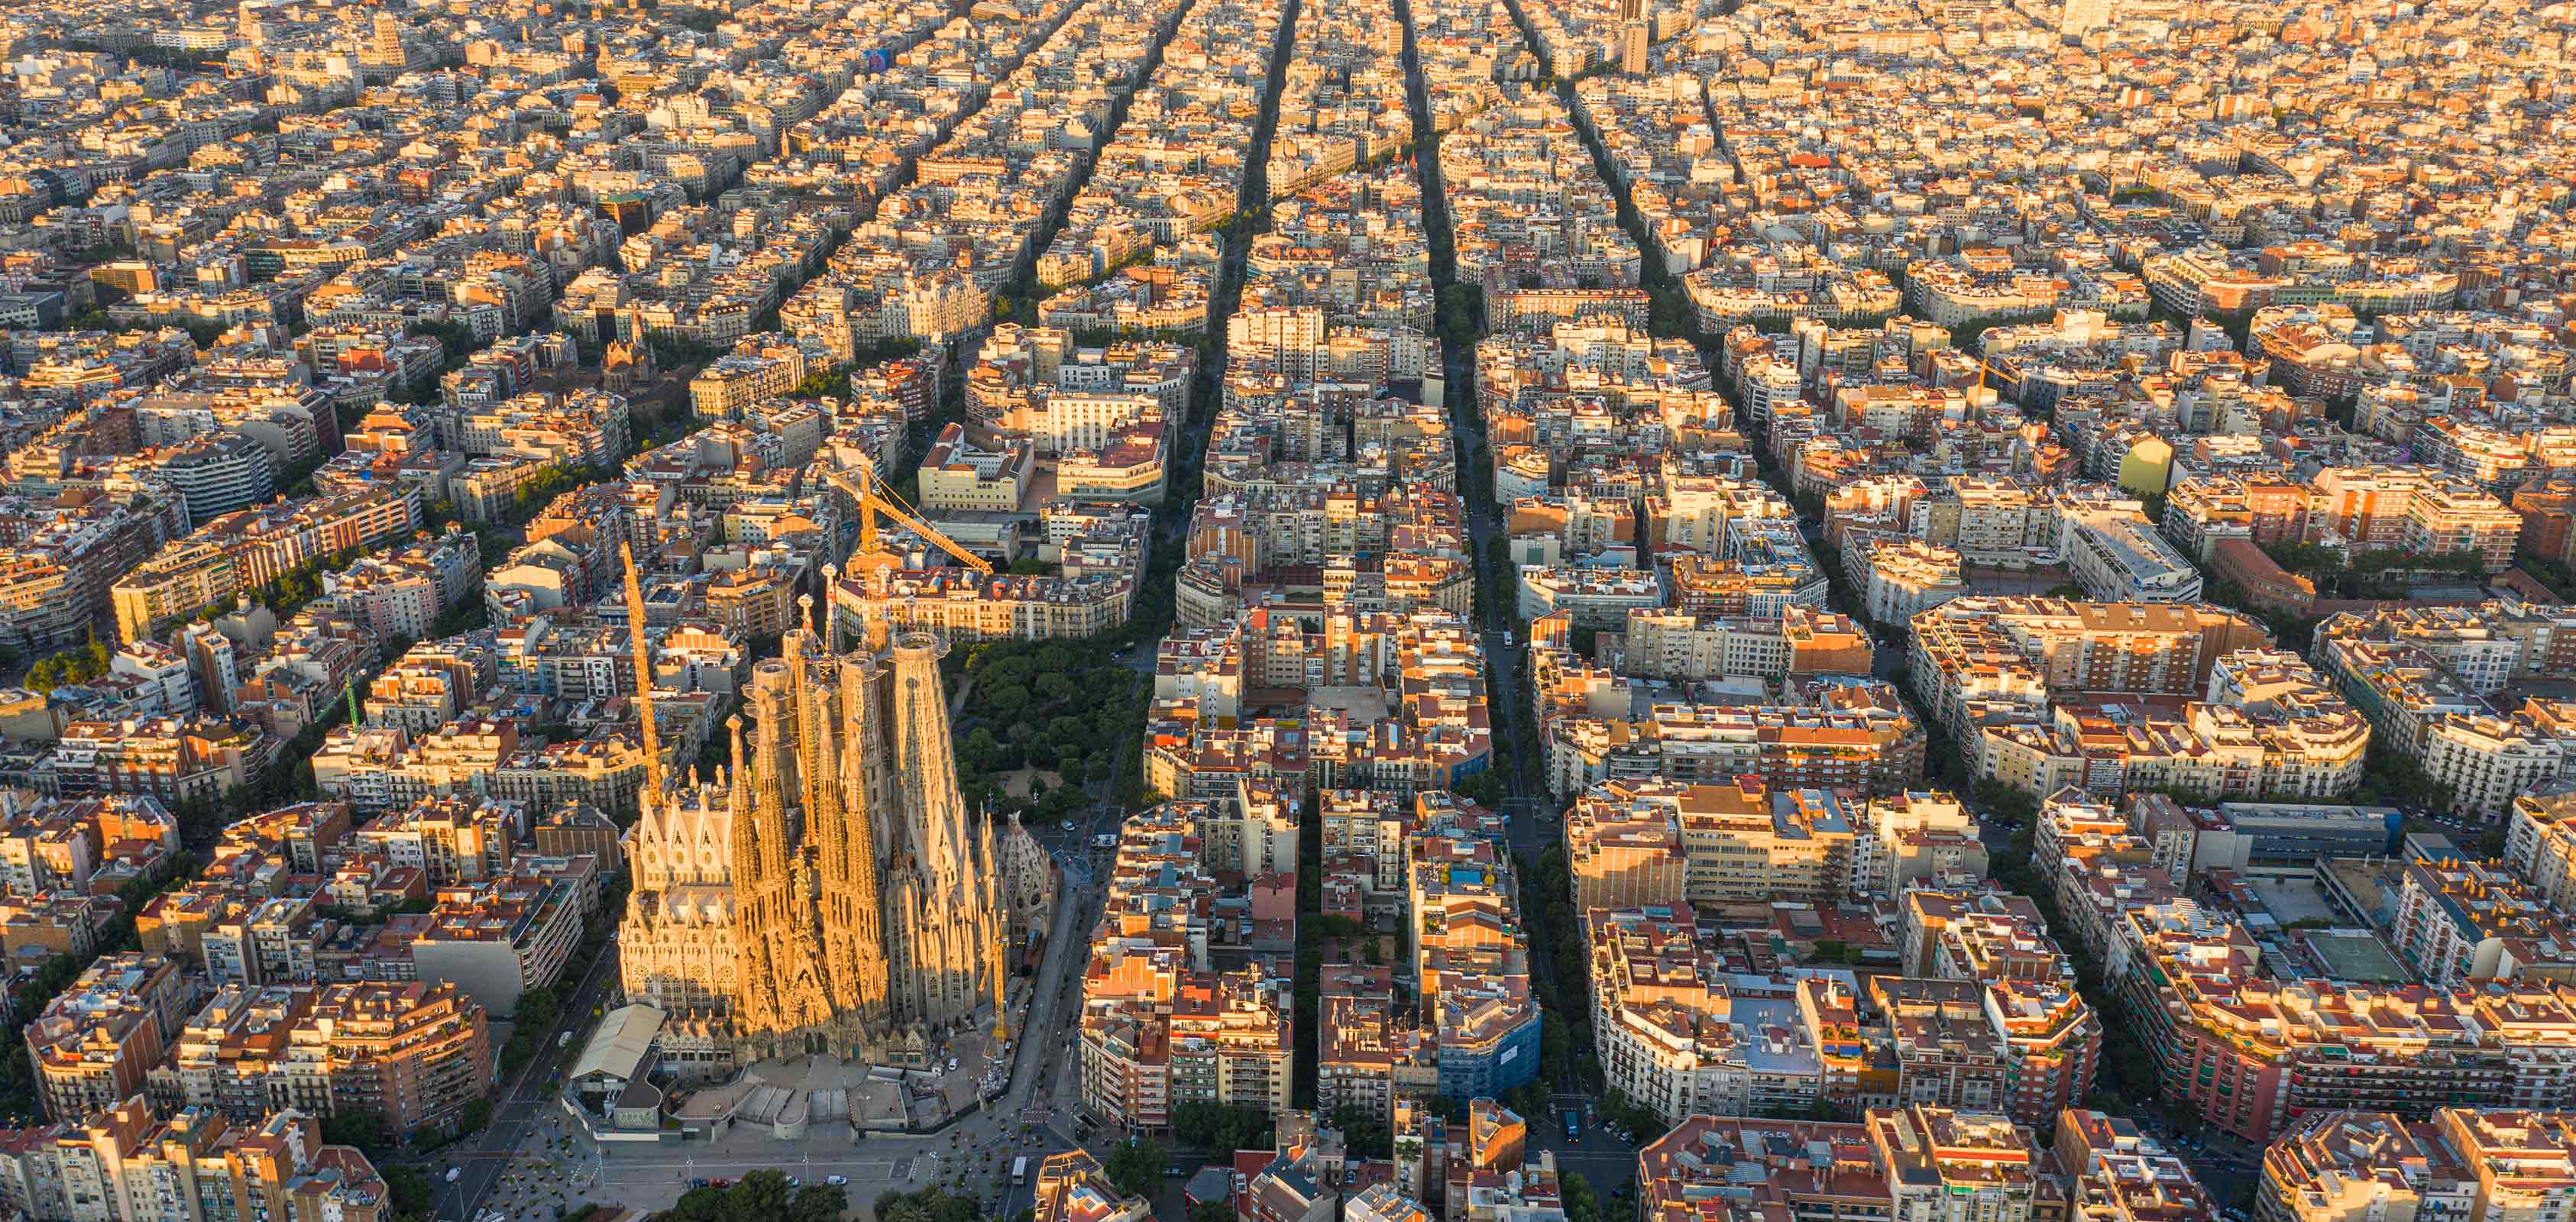 Vue aérienne de la ville de Barcelone avec le quartier de l'Eixample et la cathédrale de la Sagrada Familia au centre - SEAT Creative Living